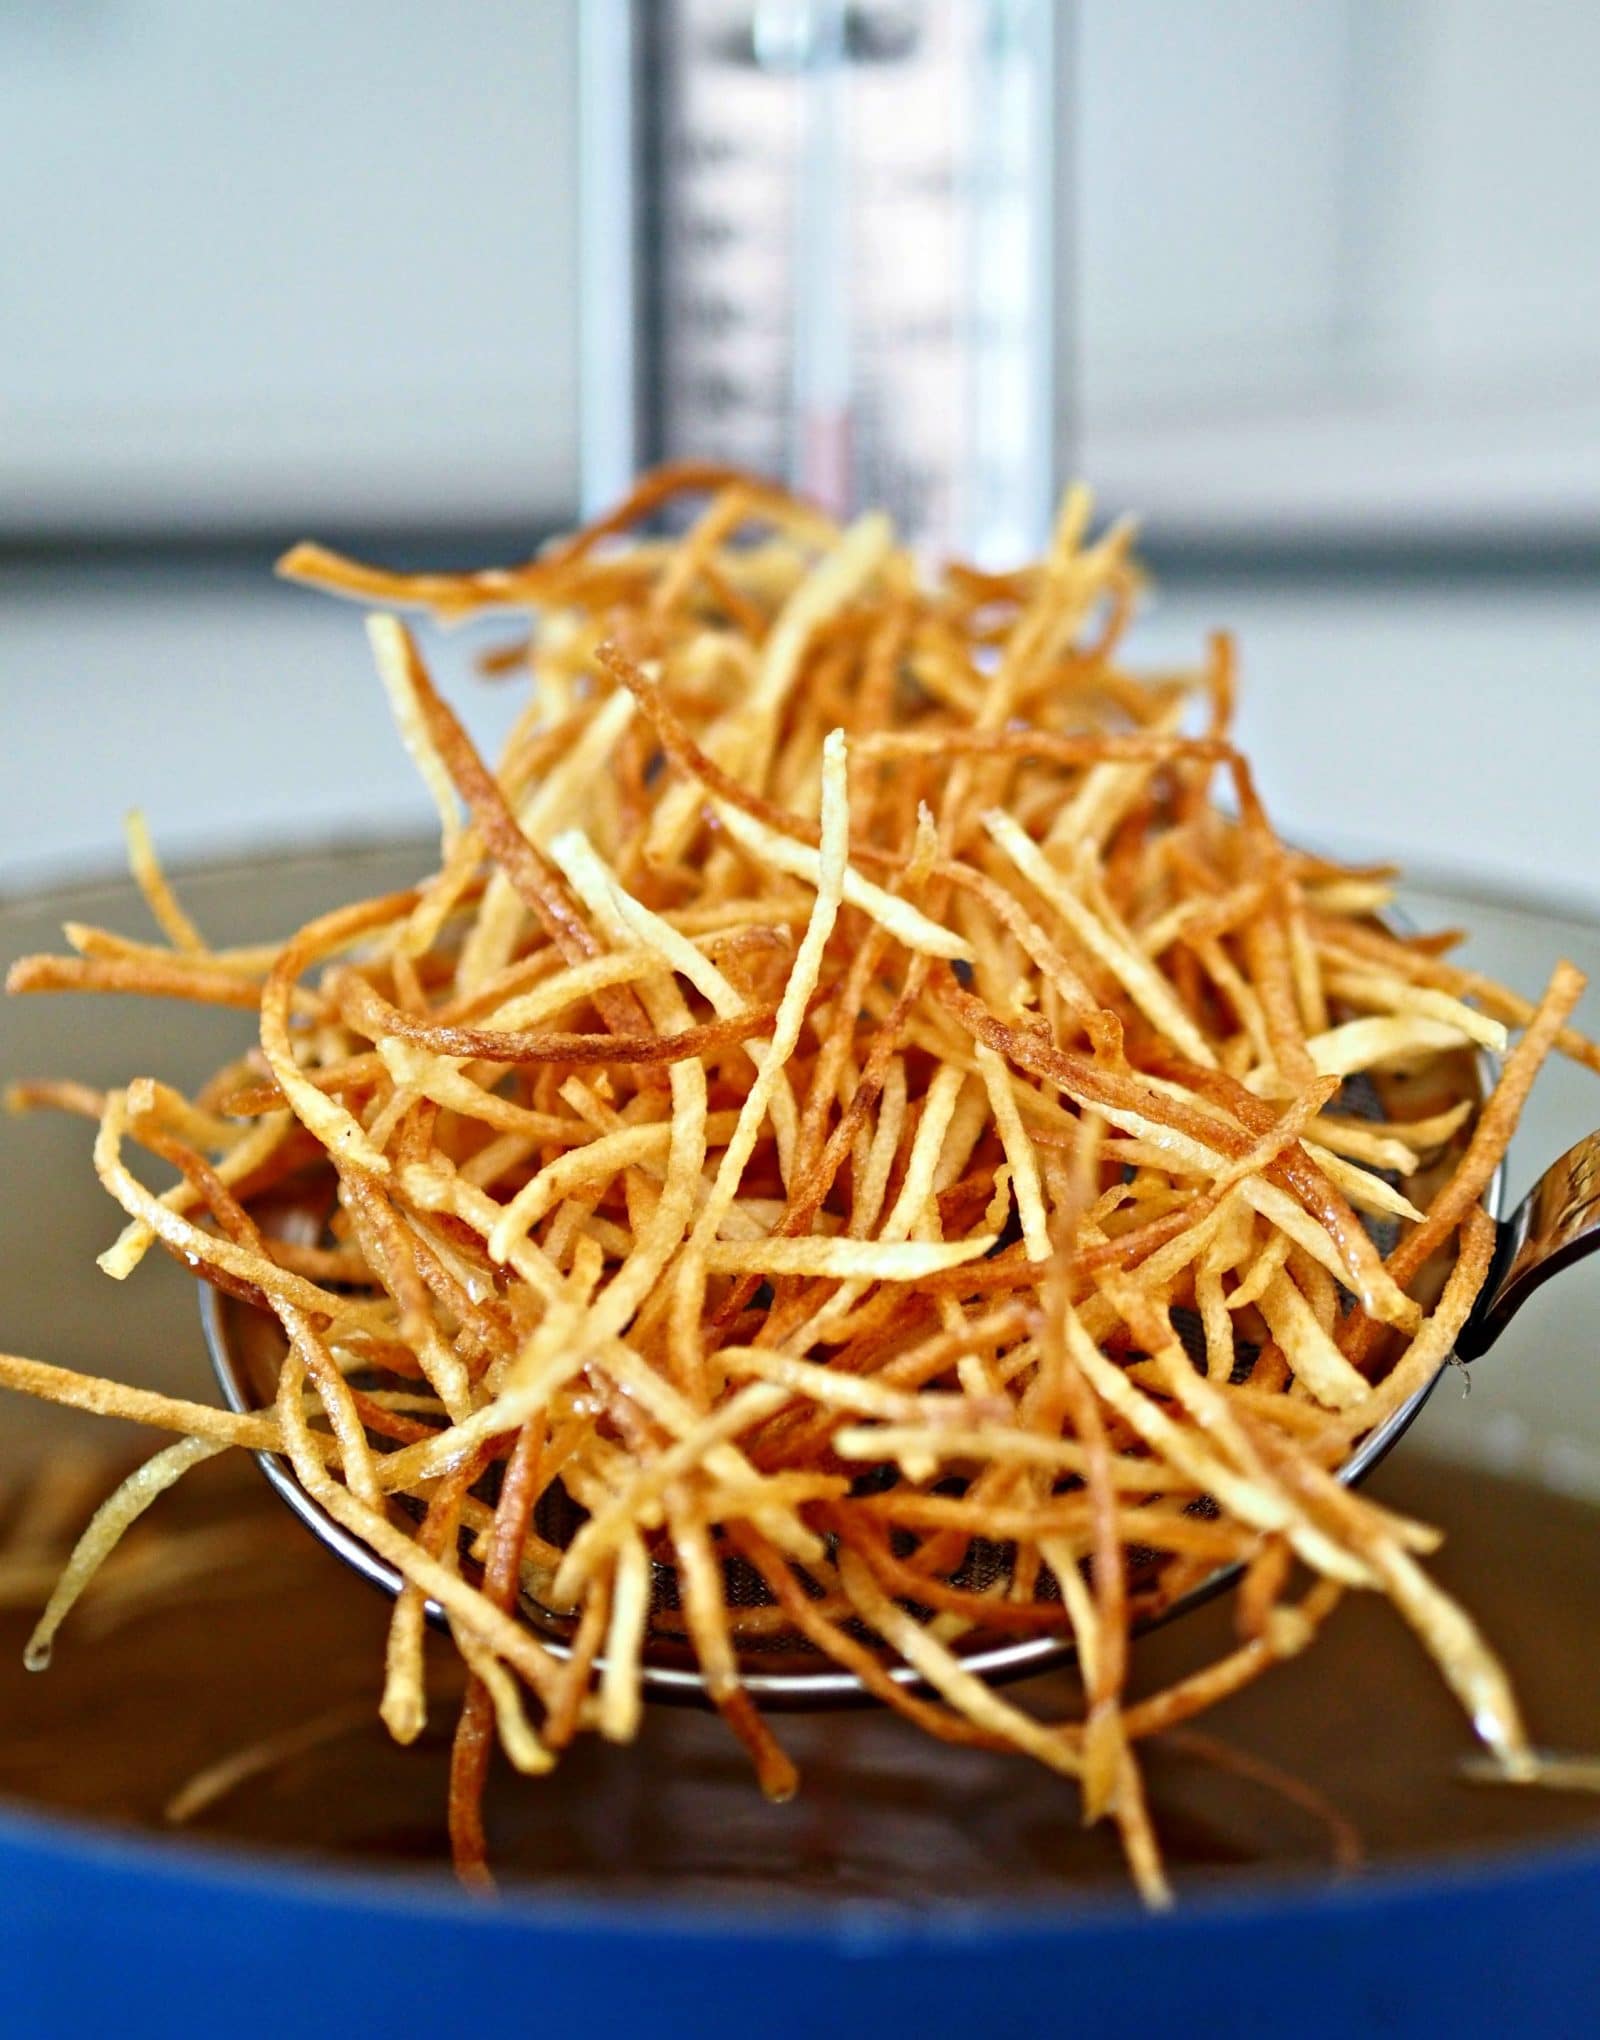 Crispy Crunchy Shoestring Potatoes. Patate a fiammifero fritte fino a doratura e poi perfettamente condite. Semplici, deliziose e stuzzicanti. Simply Sated